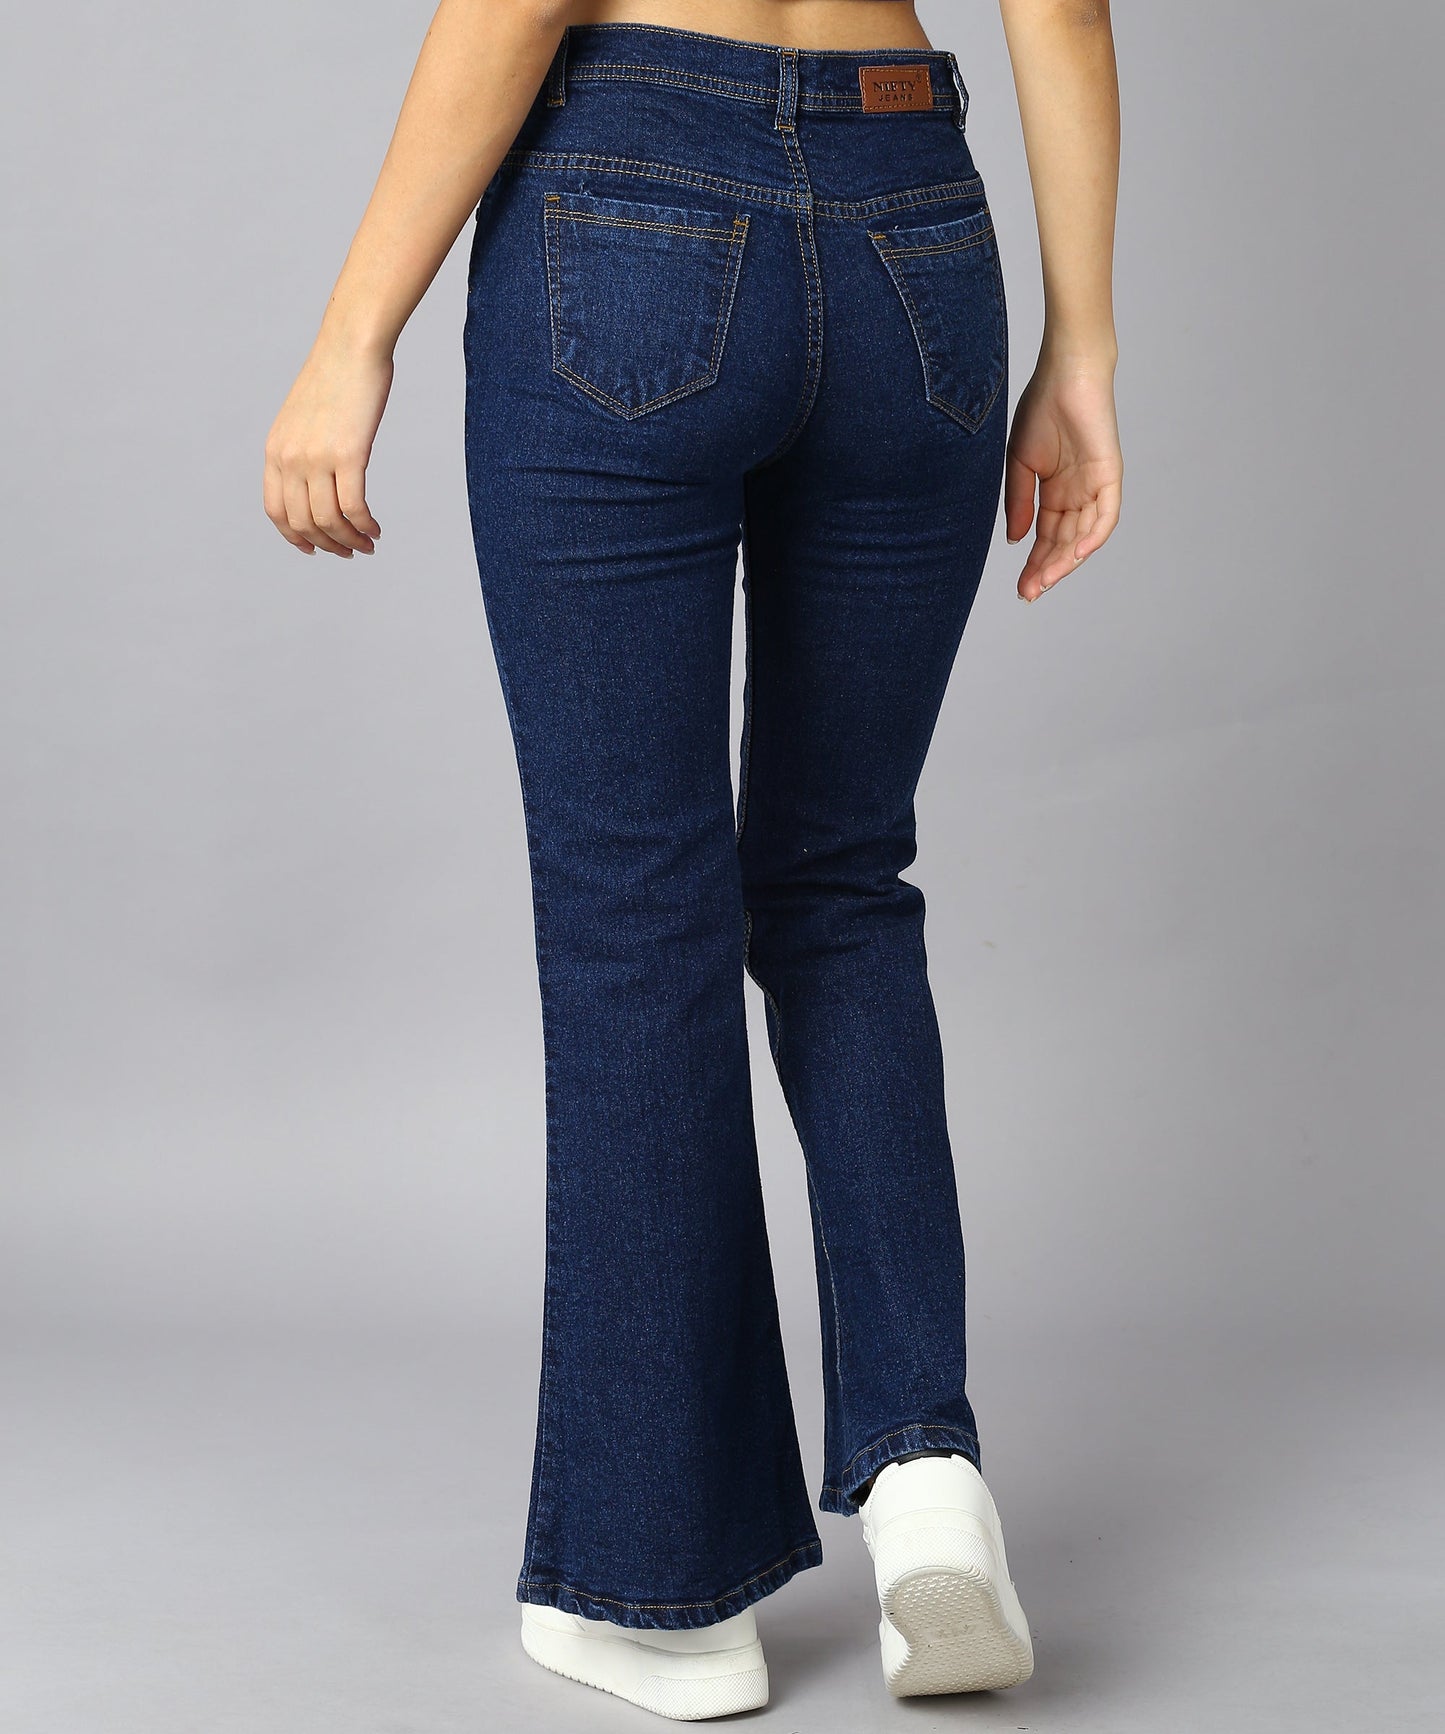 High Waist Bell Bottom Blue Jeans - NiftyJeans